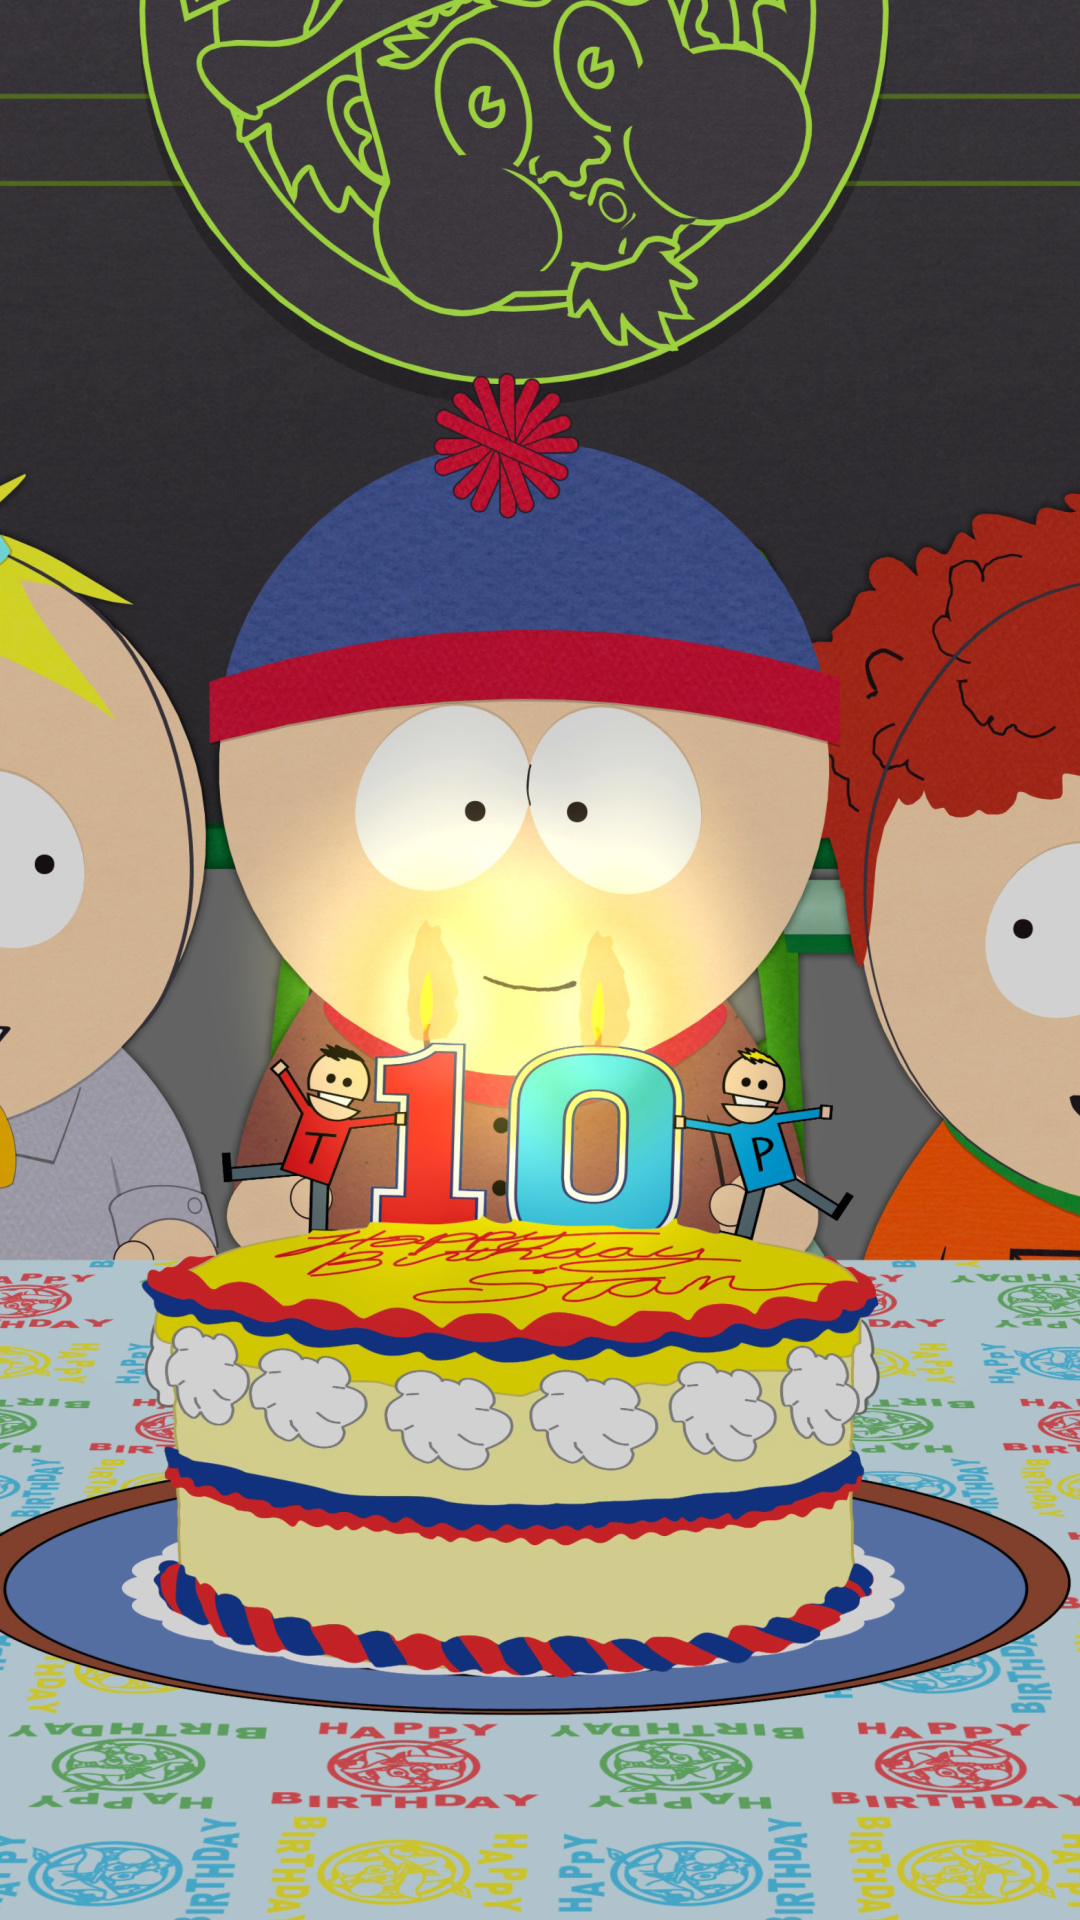 Sfondi South Park Season 15 Stans Party 1080x1920